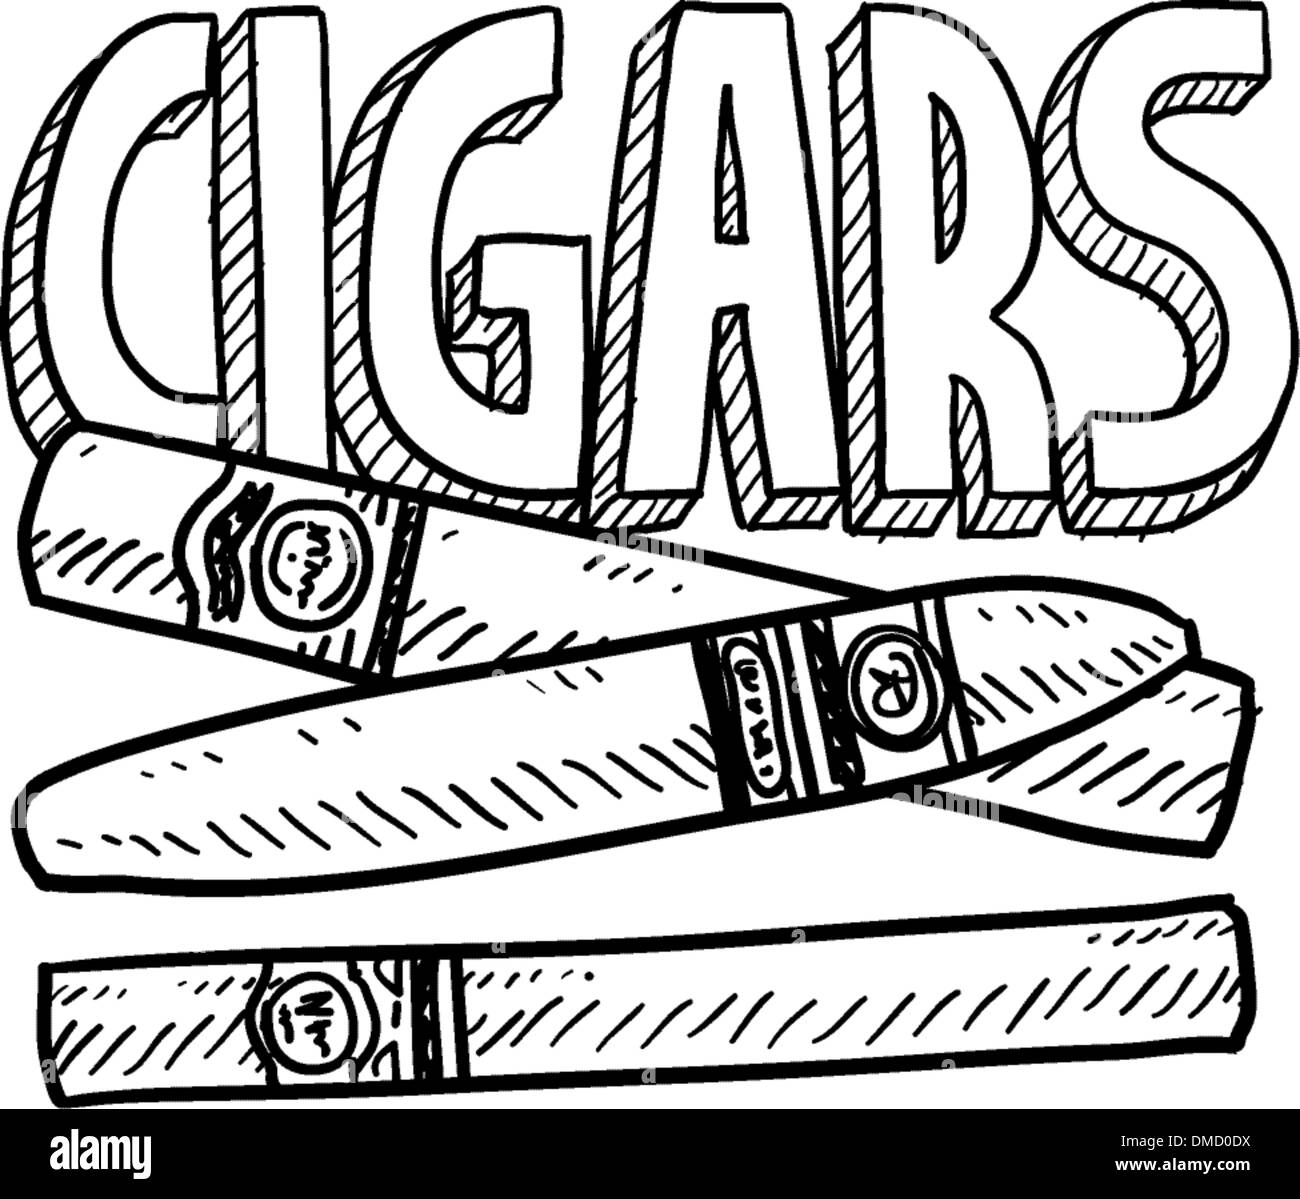 Croquis de cigare Illustration de Vecteur